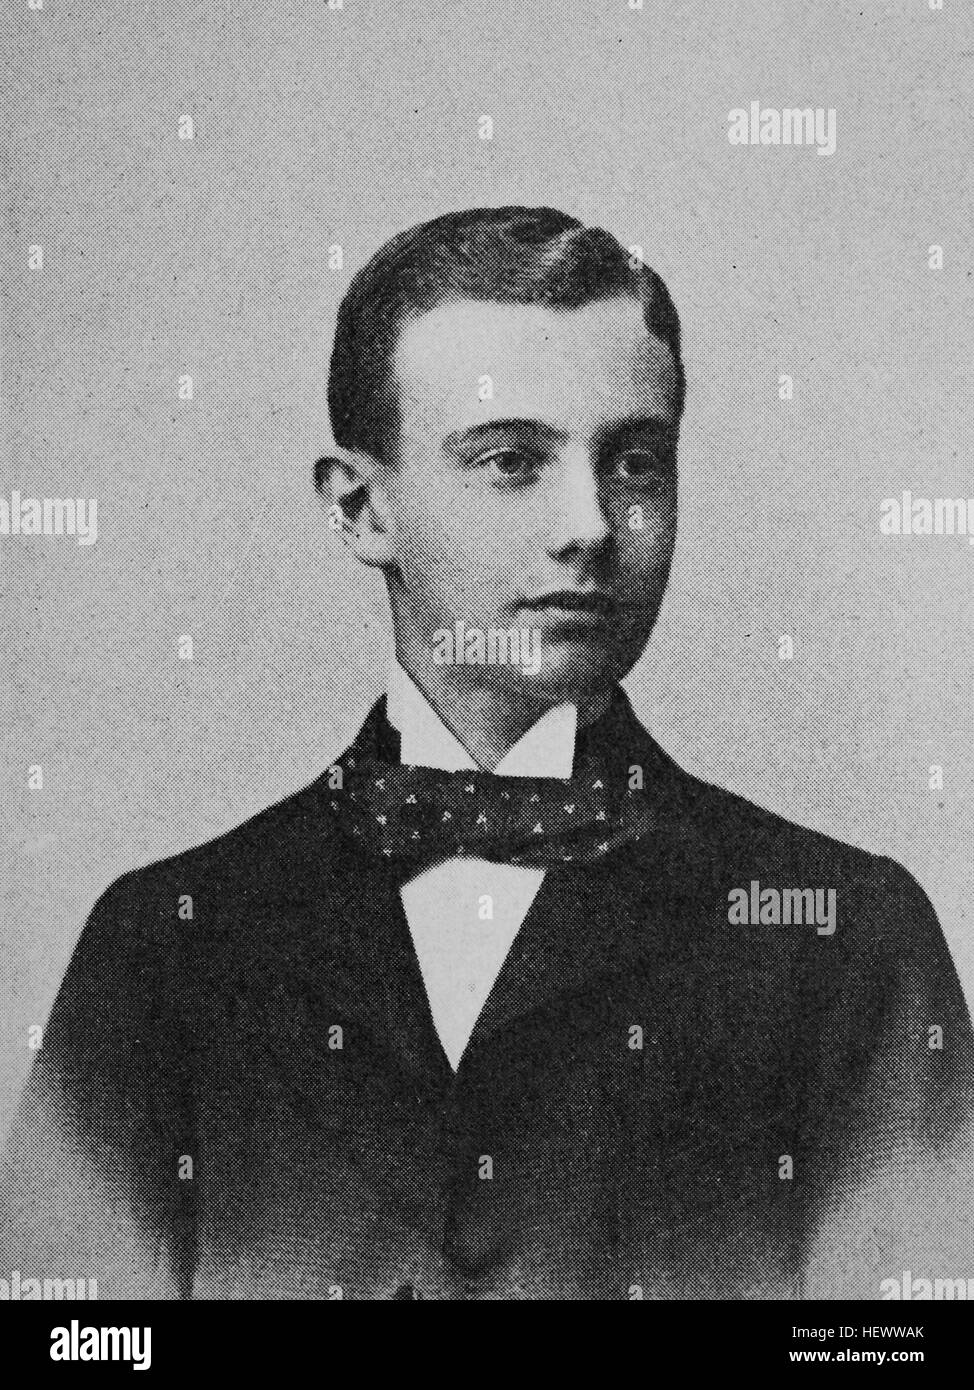 Federico Francisco IV, 9 de abril de 1882 - 17 de noviembre de 1945, último gran duque de Mecklenburg-Schwerin y regente de Mecklenburg-Strelitz, imagen de 1895, digital mejorado Foto de stock